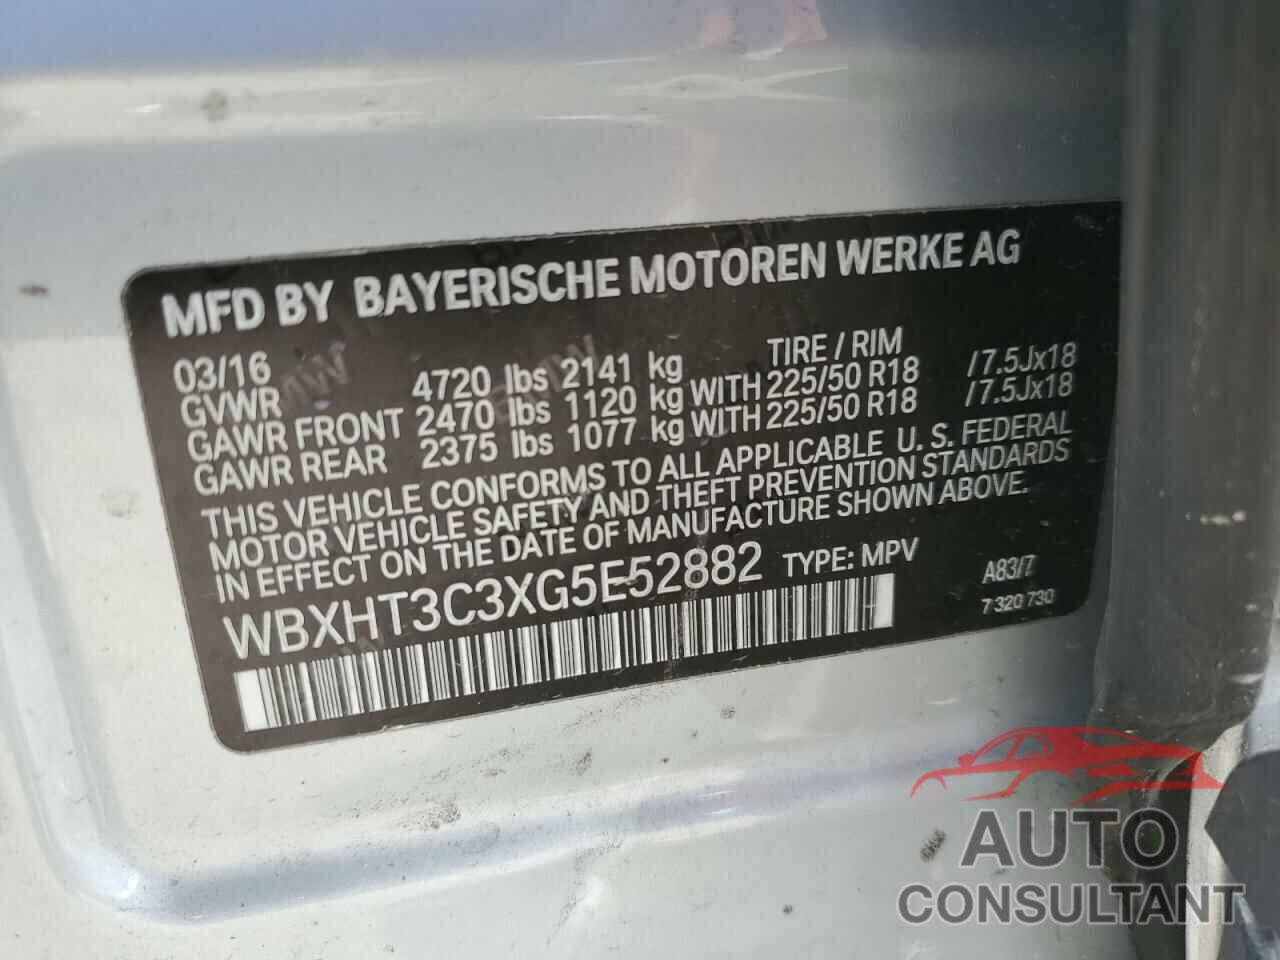 BMW X1 2016 - WBXHT3C3XG5E52882